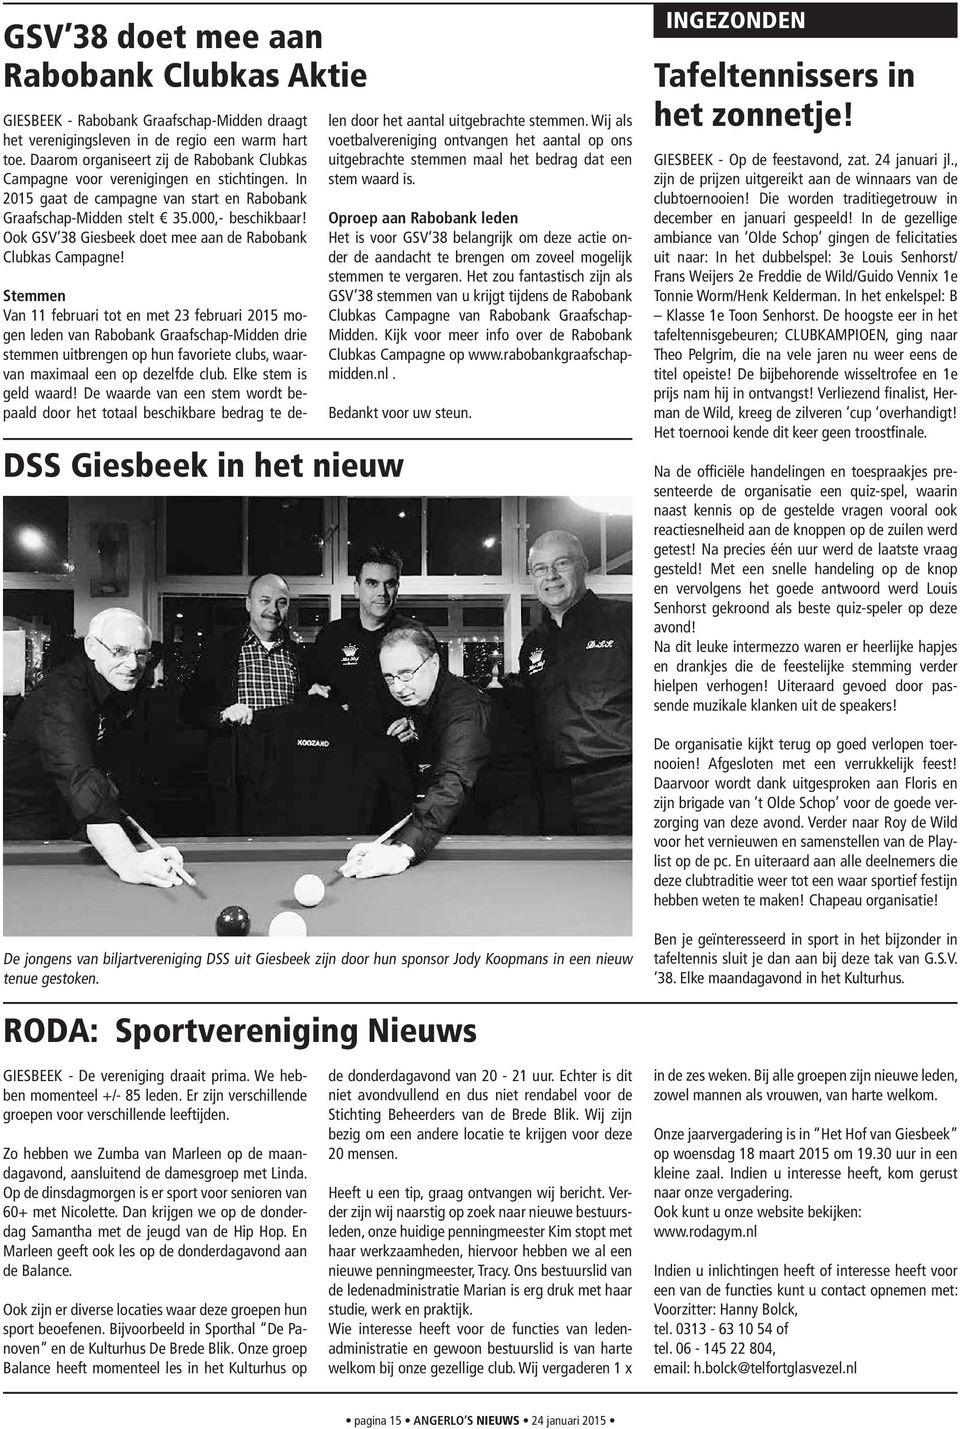 Ook GSV 38 Giesbeek doet mee aan de Rabobank Clubkas Campagne!